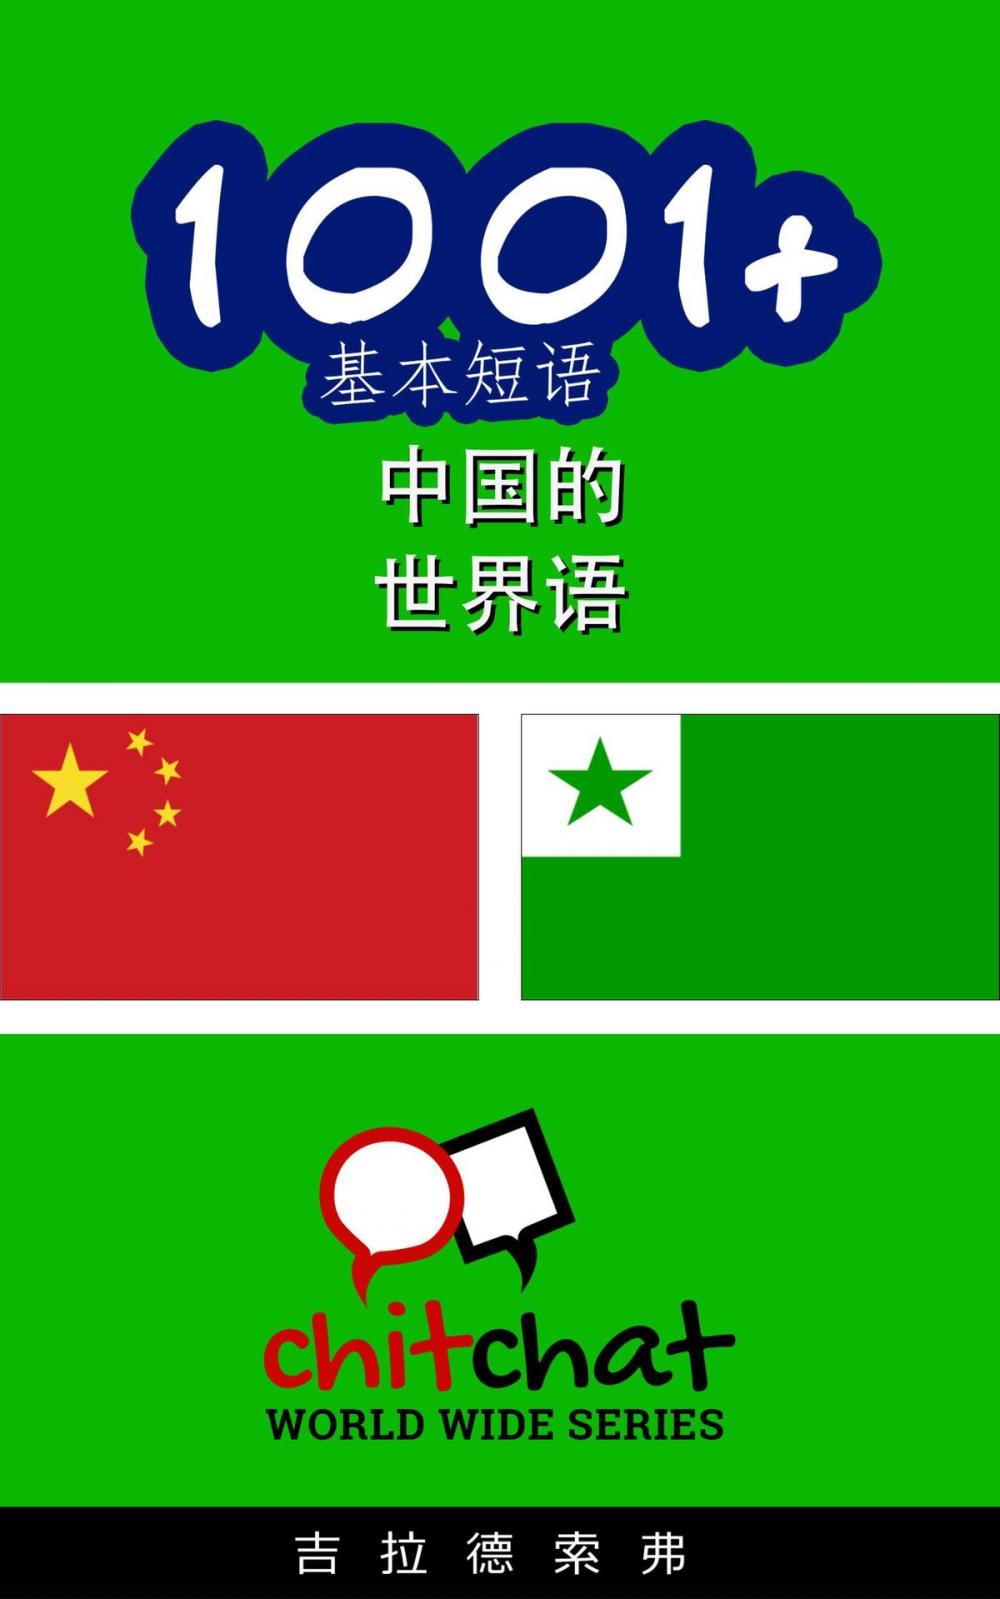 Big bigCover of 1001+ 基本短语 中国的 - 世界语